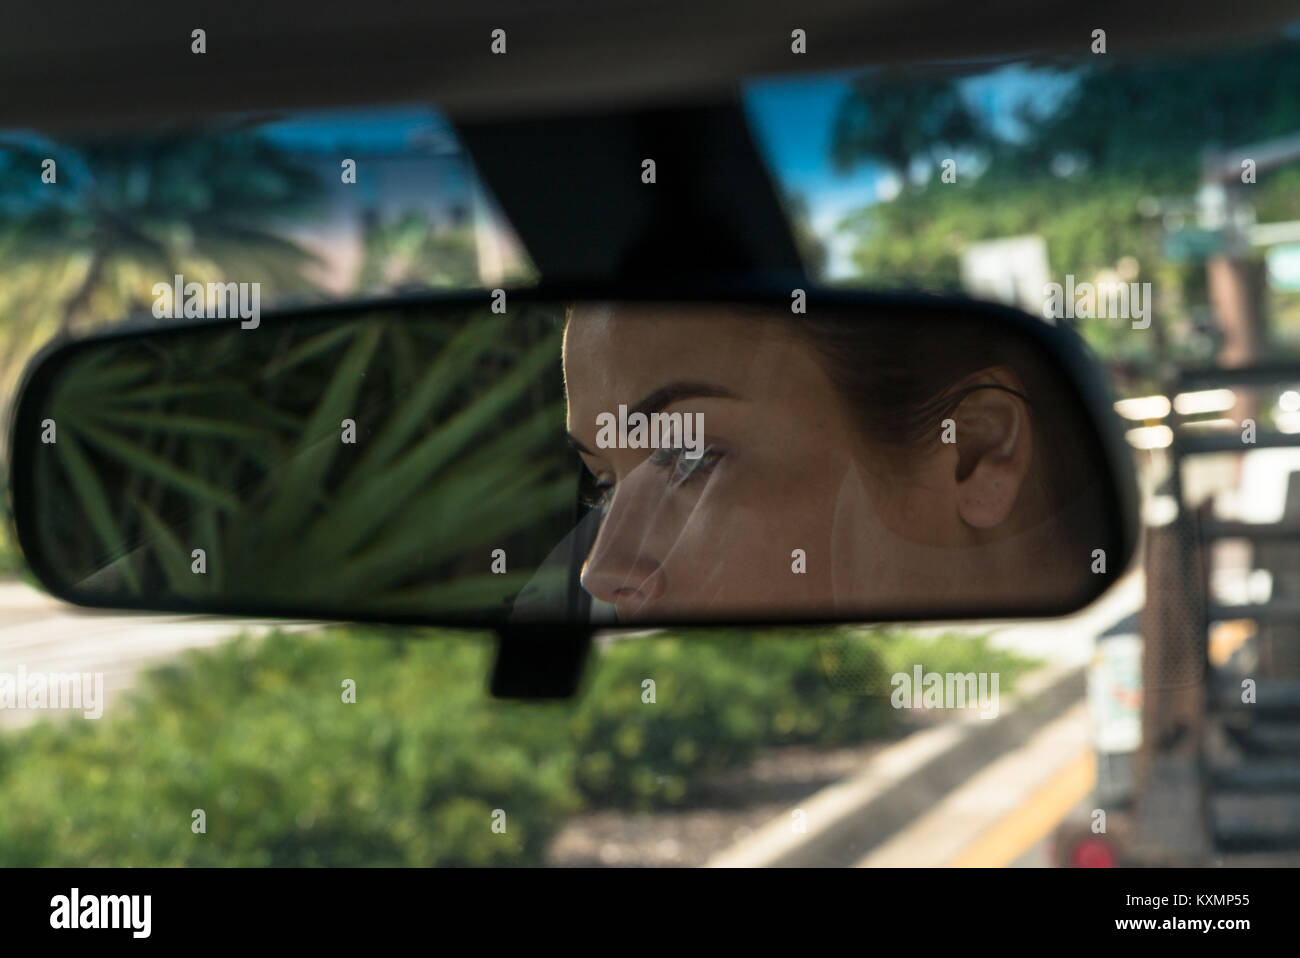 Giovani volto di donna in specchio auto,Florida, STATI UNITI D'AMERICA,close up Foto Stock